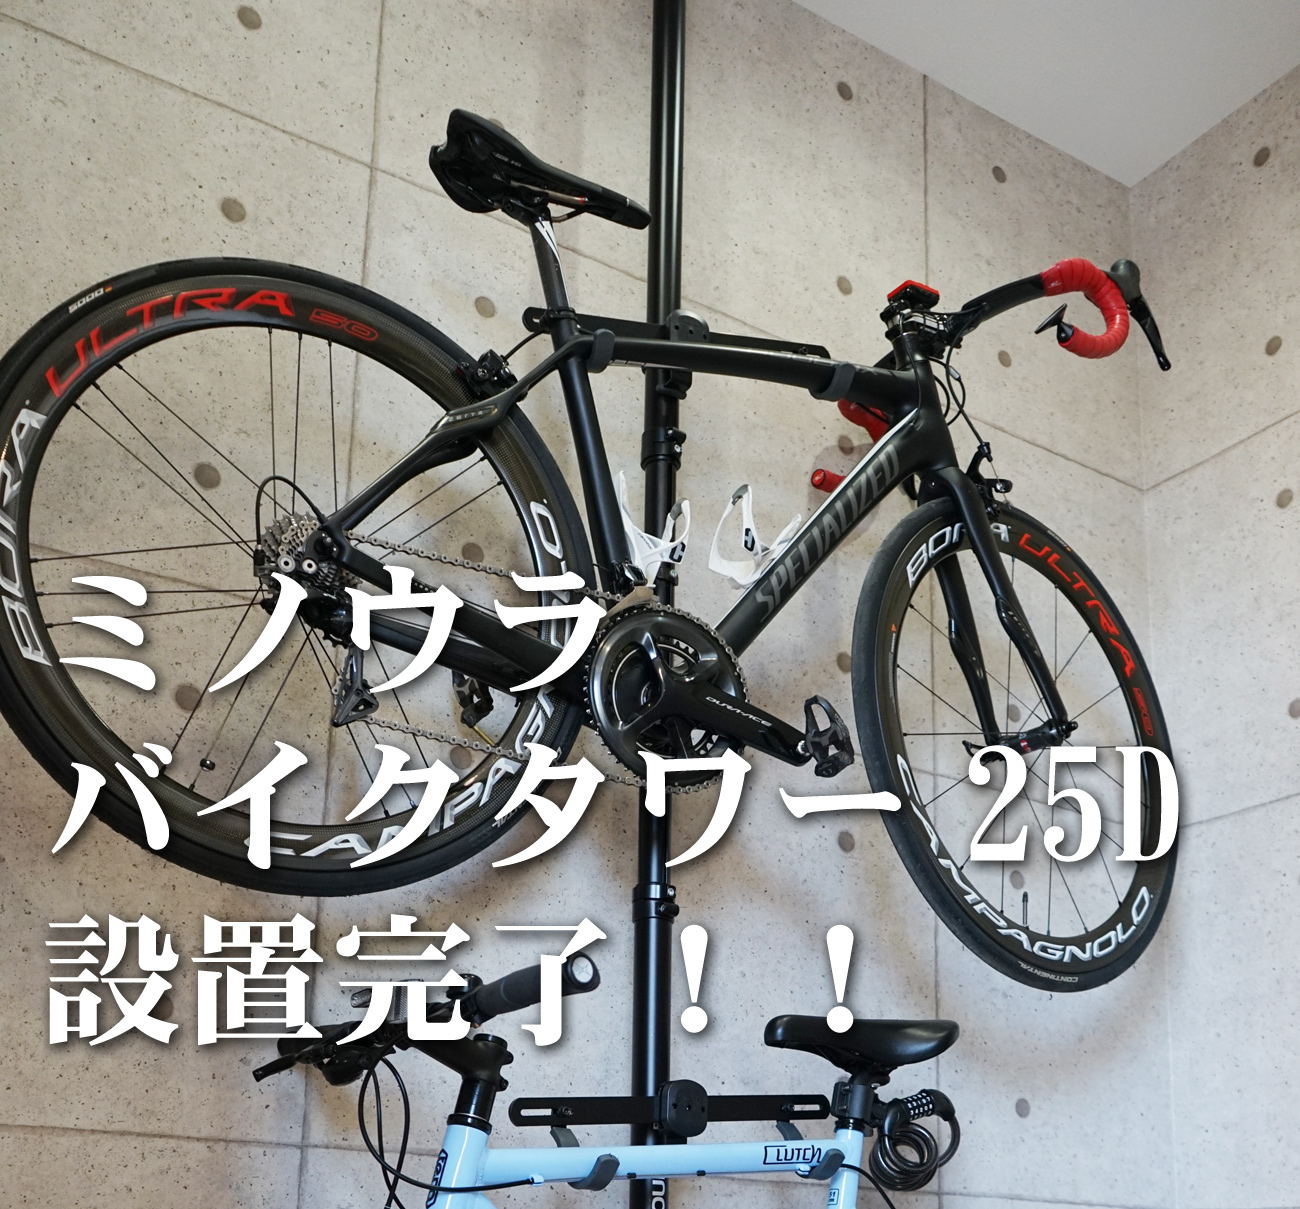 MINOURA(ミノウラ) バイクタワー 天井突っ張り式 25D-